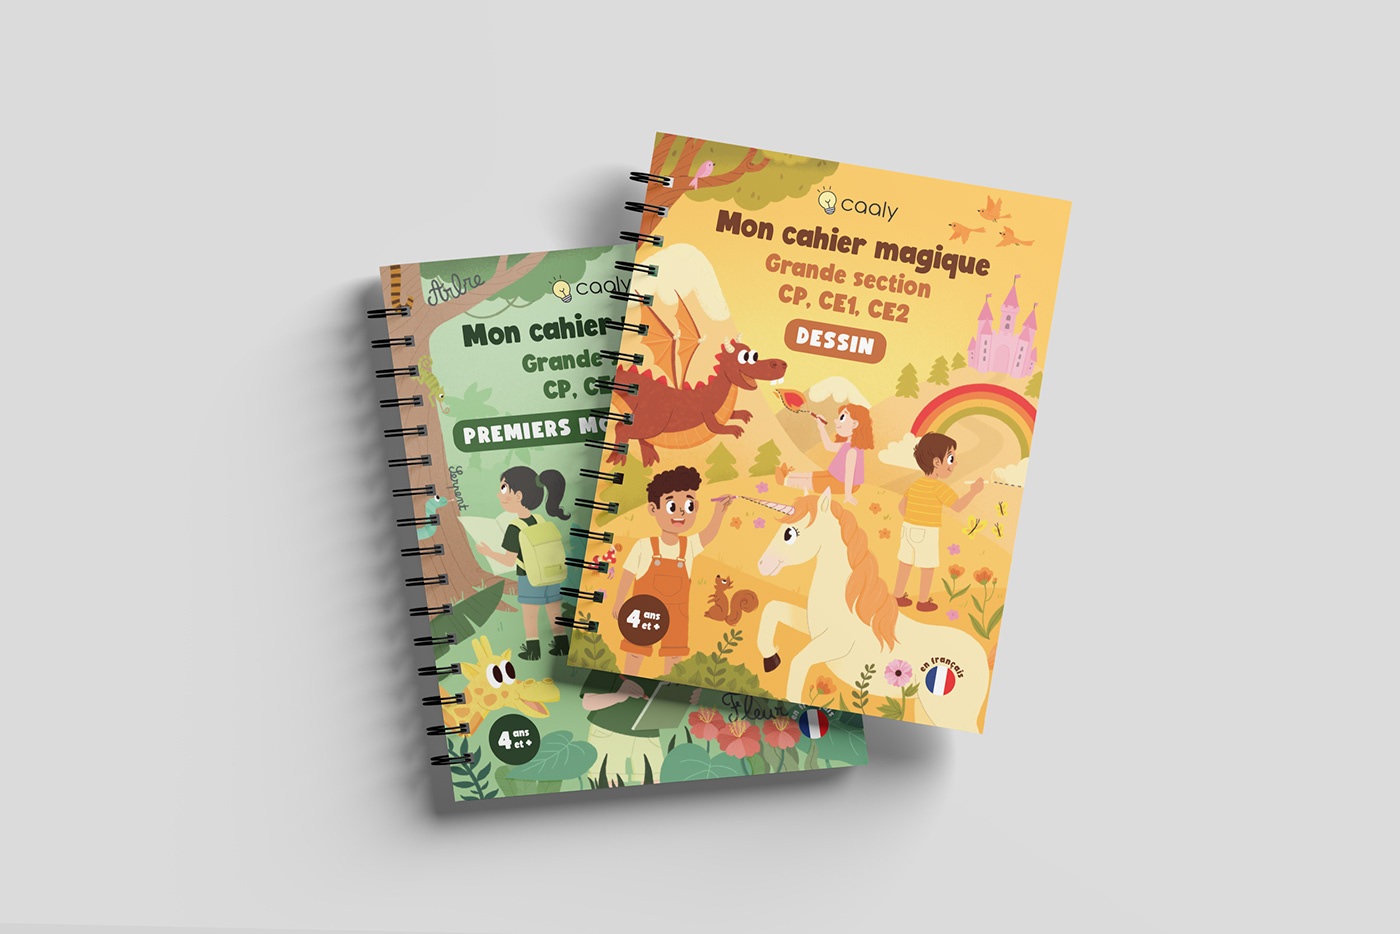 children illustrations Editorial Illustration Book Cover Design print InDesign textbook children's book cartoon Graphic Designer Procreate